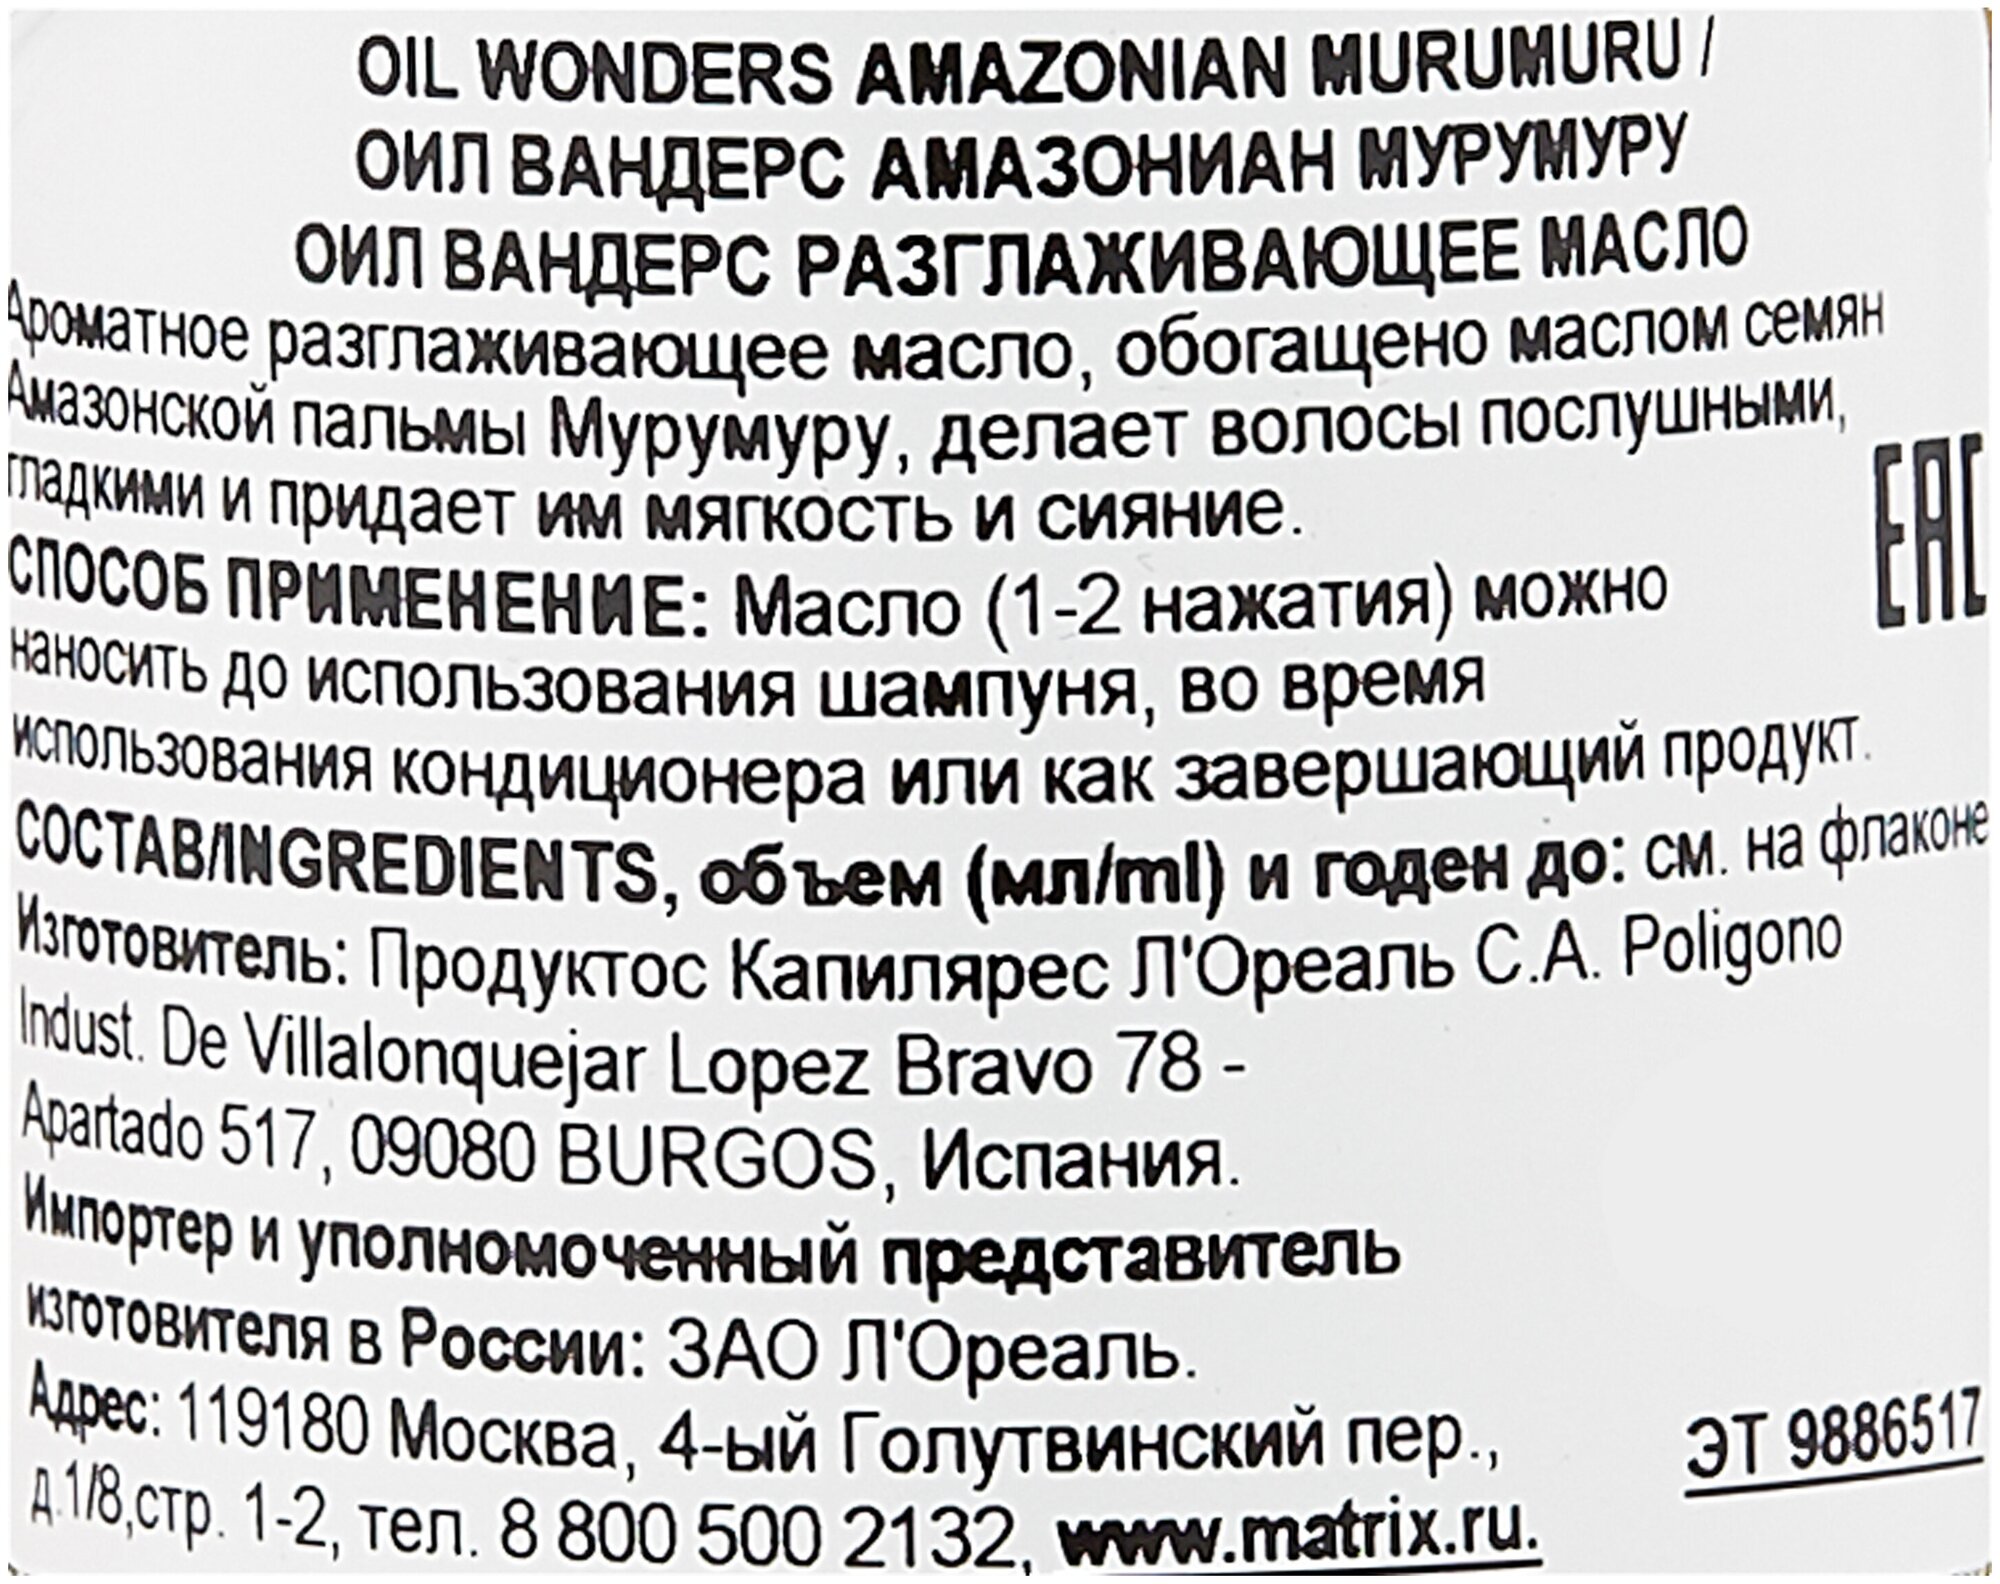 OIL WONDERS Ароматное разглаживающее масло "Амазонская Мурумуру" обогащено маслом семян Амазонской пальмы Мурумуру,150 мл